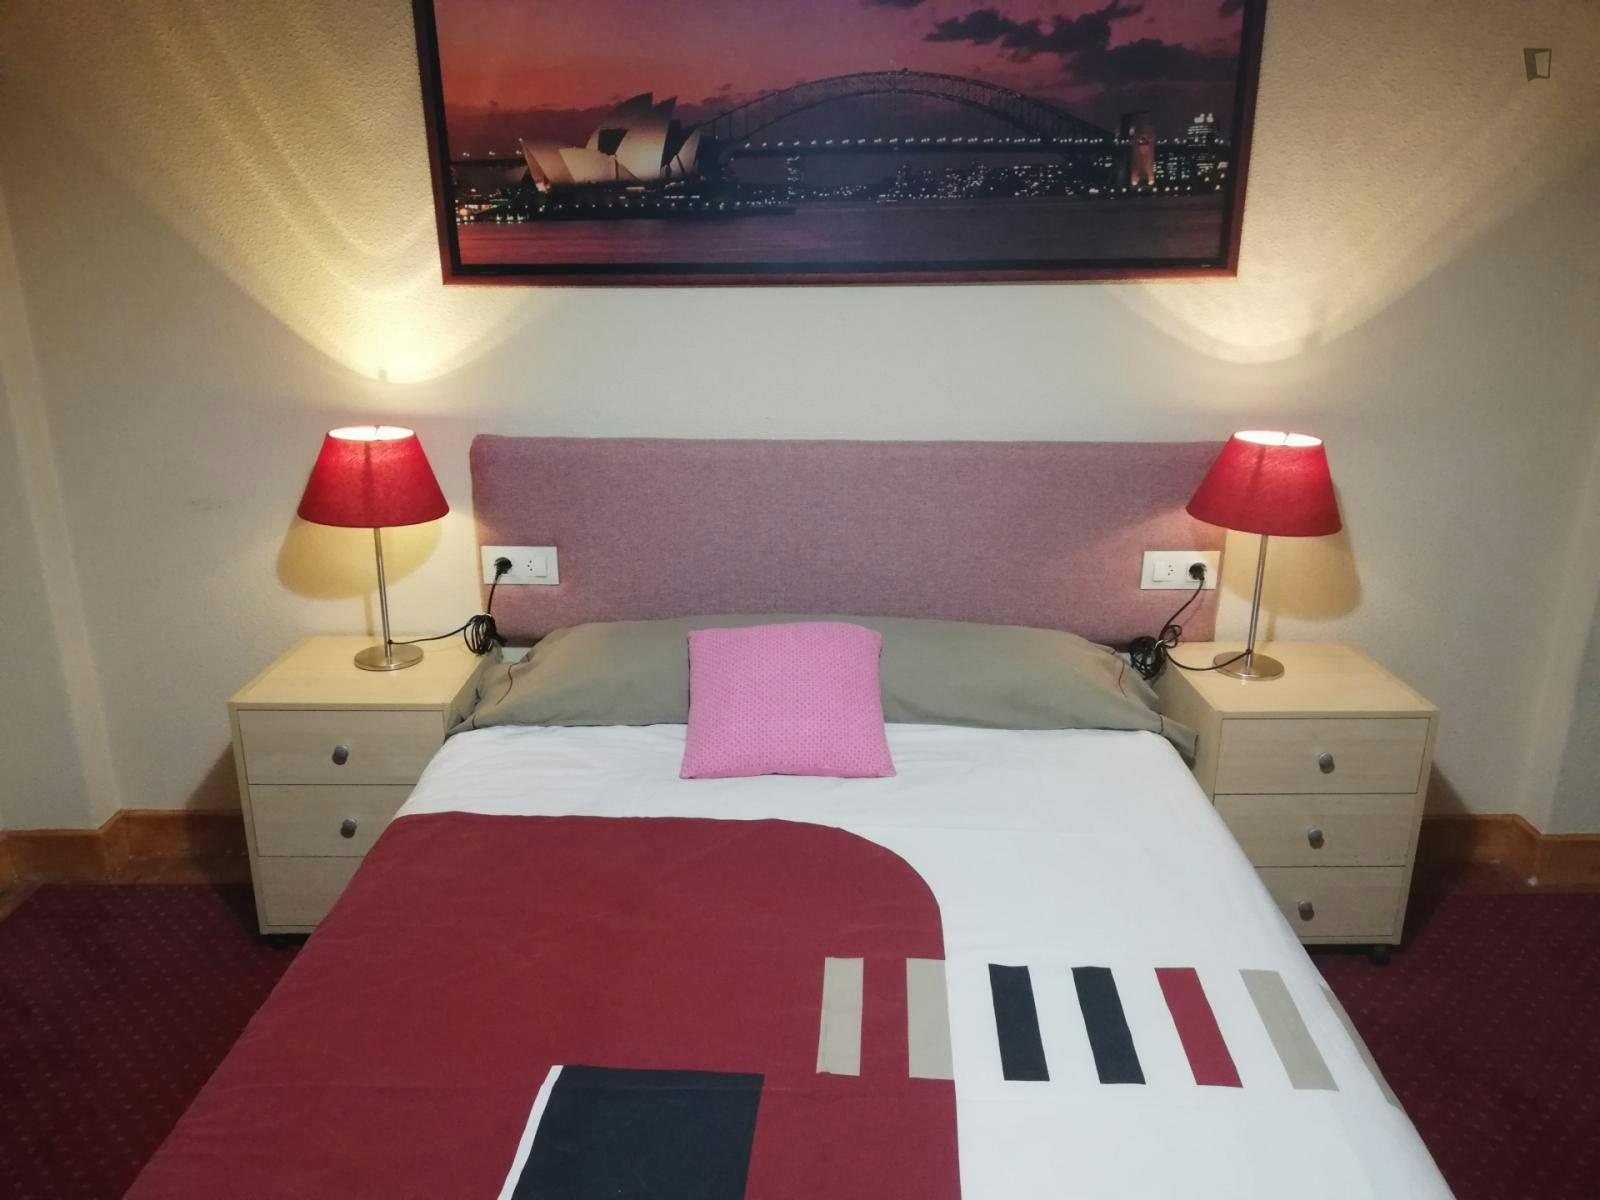 Homely double bedroom near the Vialia Vigo shopping centre